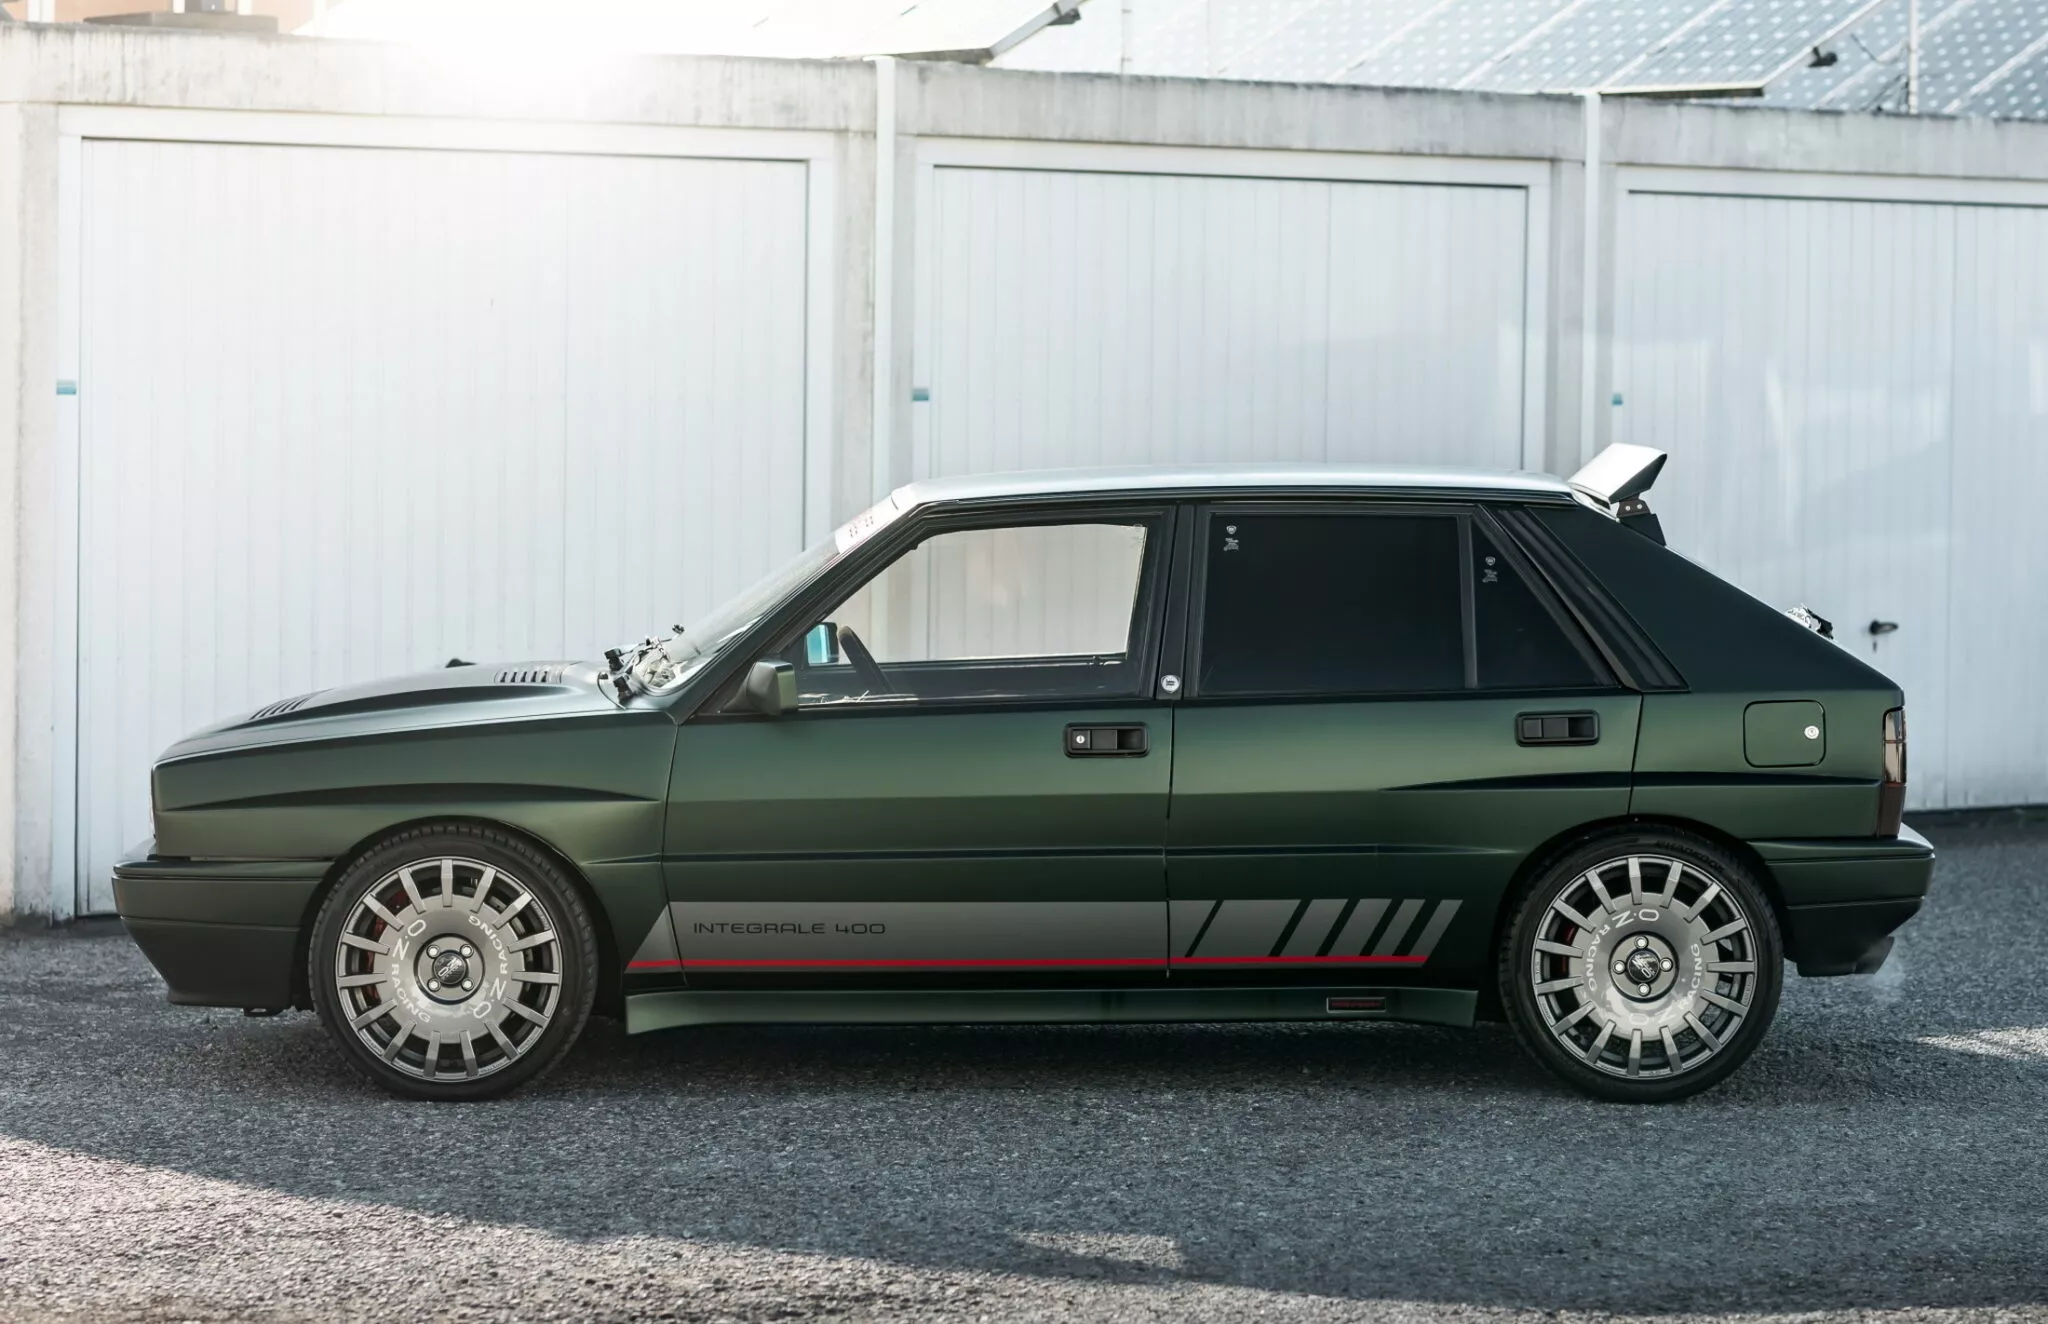 شركة مانهارت تكشف عن سيارة لانسيا كلاسيكية إيطالية تم تجديدها بالكامل وعرضها للبيع 8